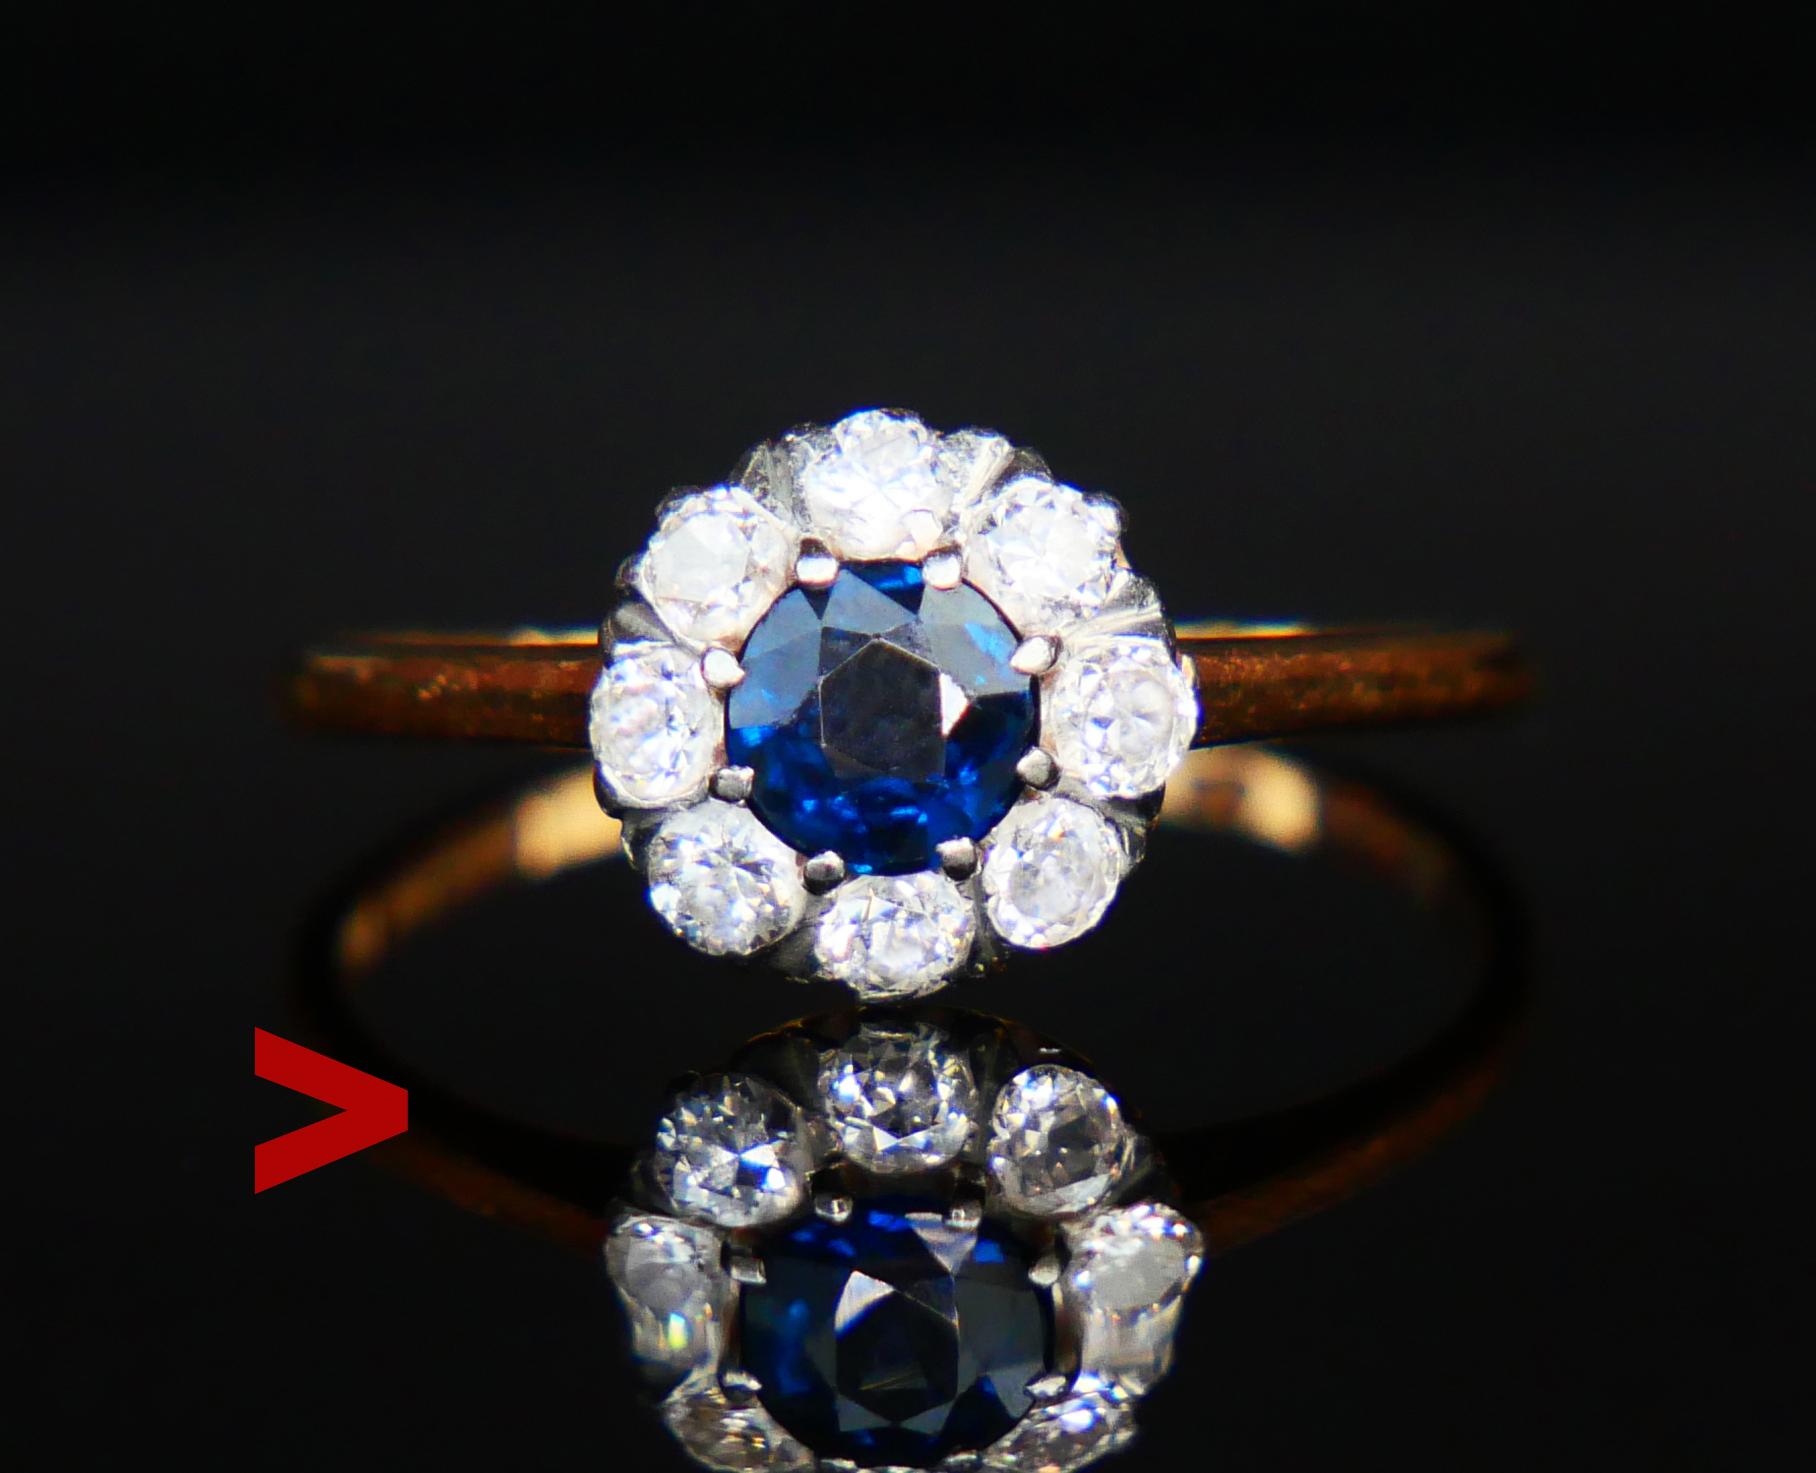 104 Jahre alter Halo-Ring aus massivem 18-karätigem Gelbgold mit natürlichem blauem Saphir und 8 Diamanten im alten europäischen Schliff in Platin- oder Weißgoldfassung.

Natürlicher Saphir von altem europäischen Diamantschliff, Farbe ist mittel